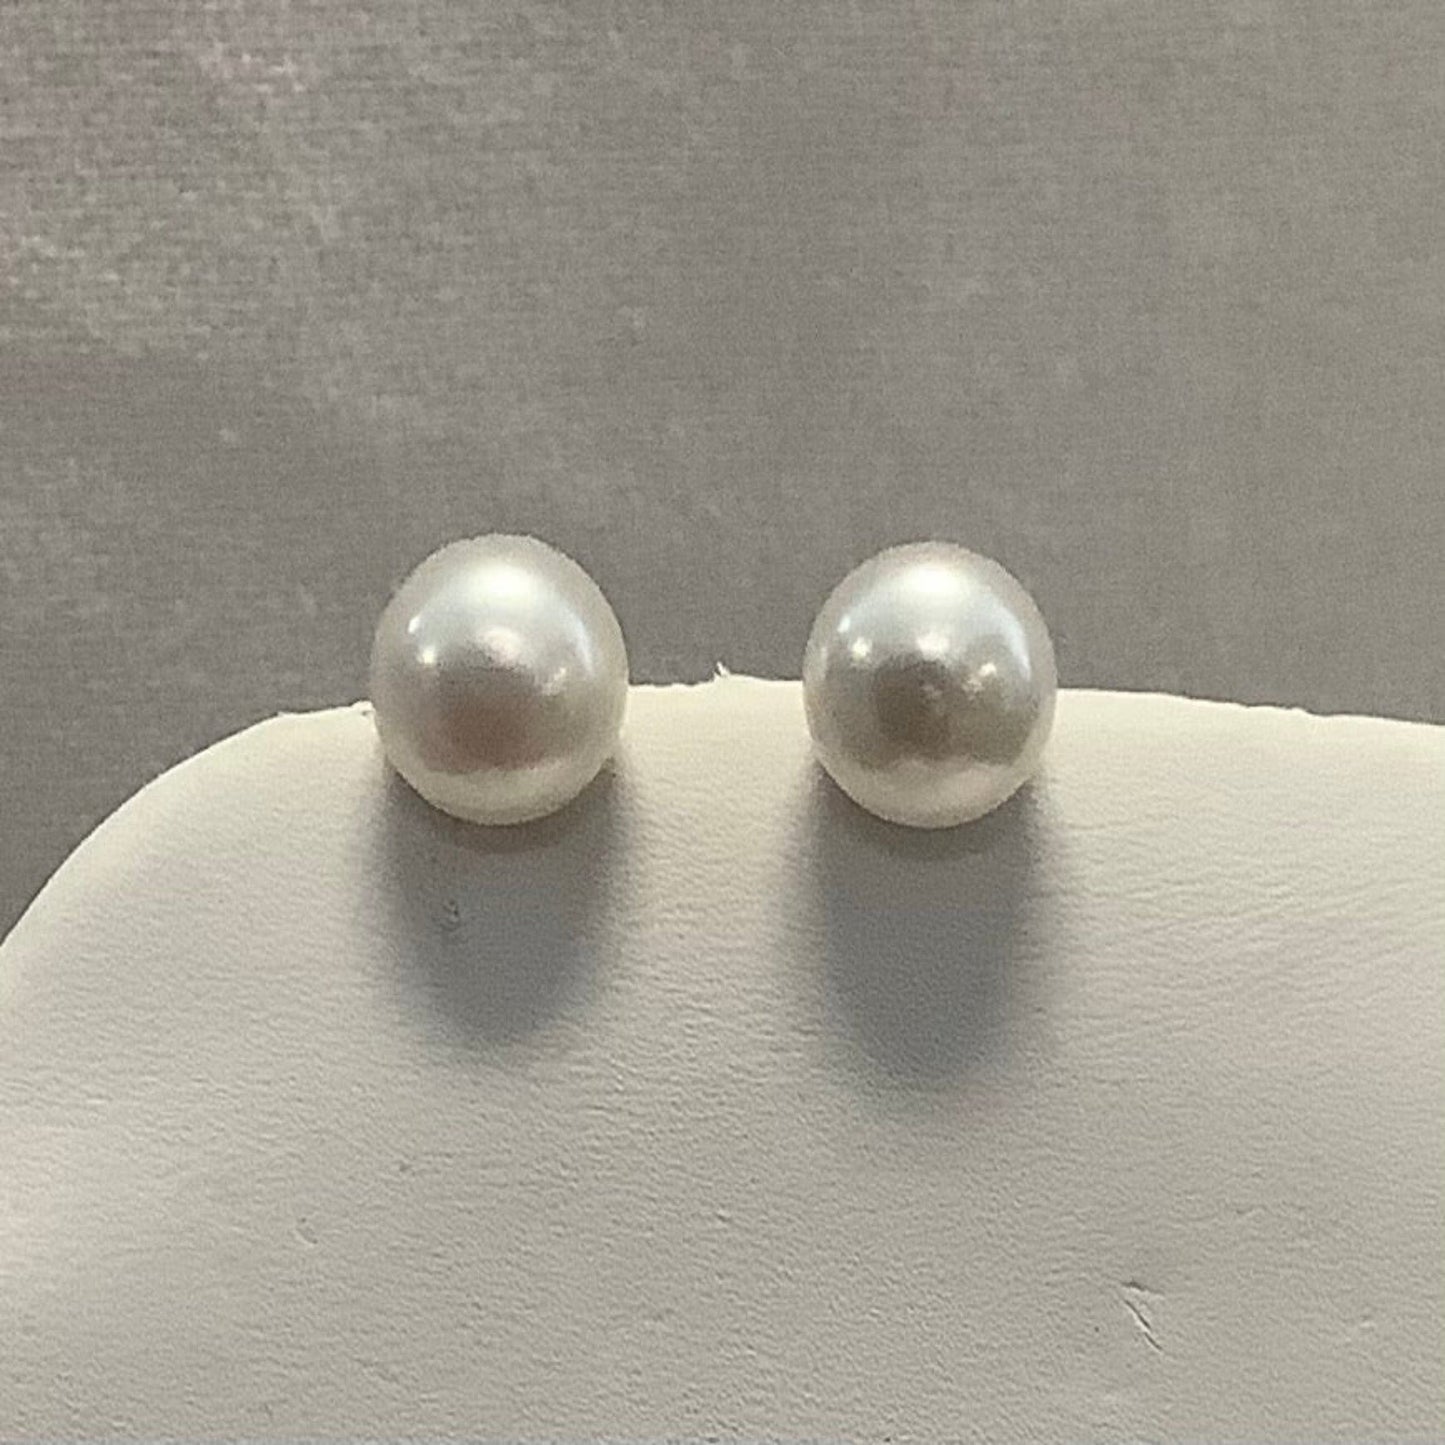 Freshwater pearl stud earrings by Skosh